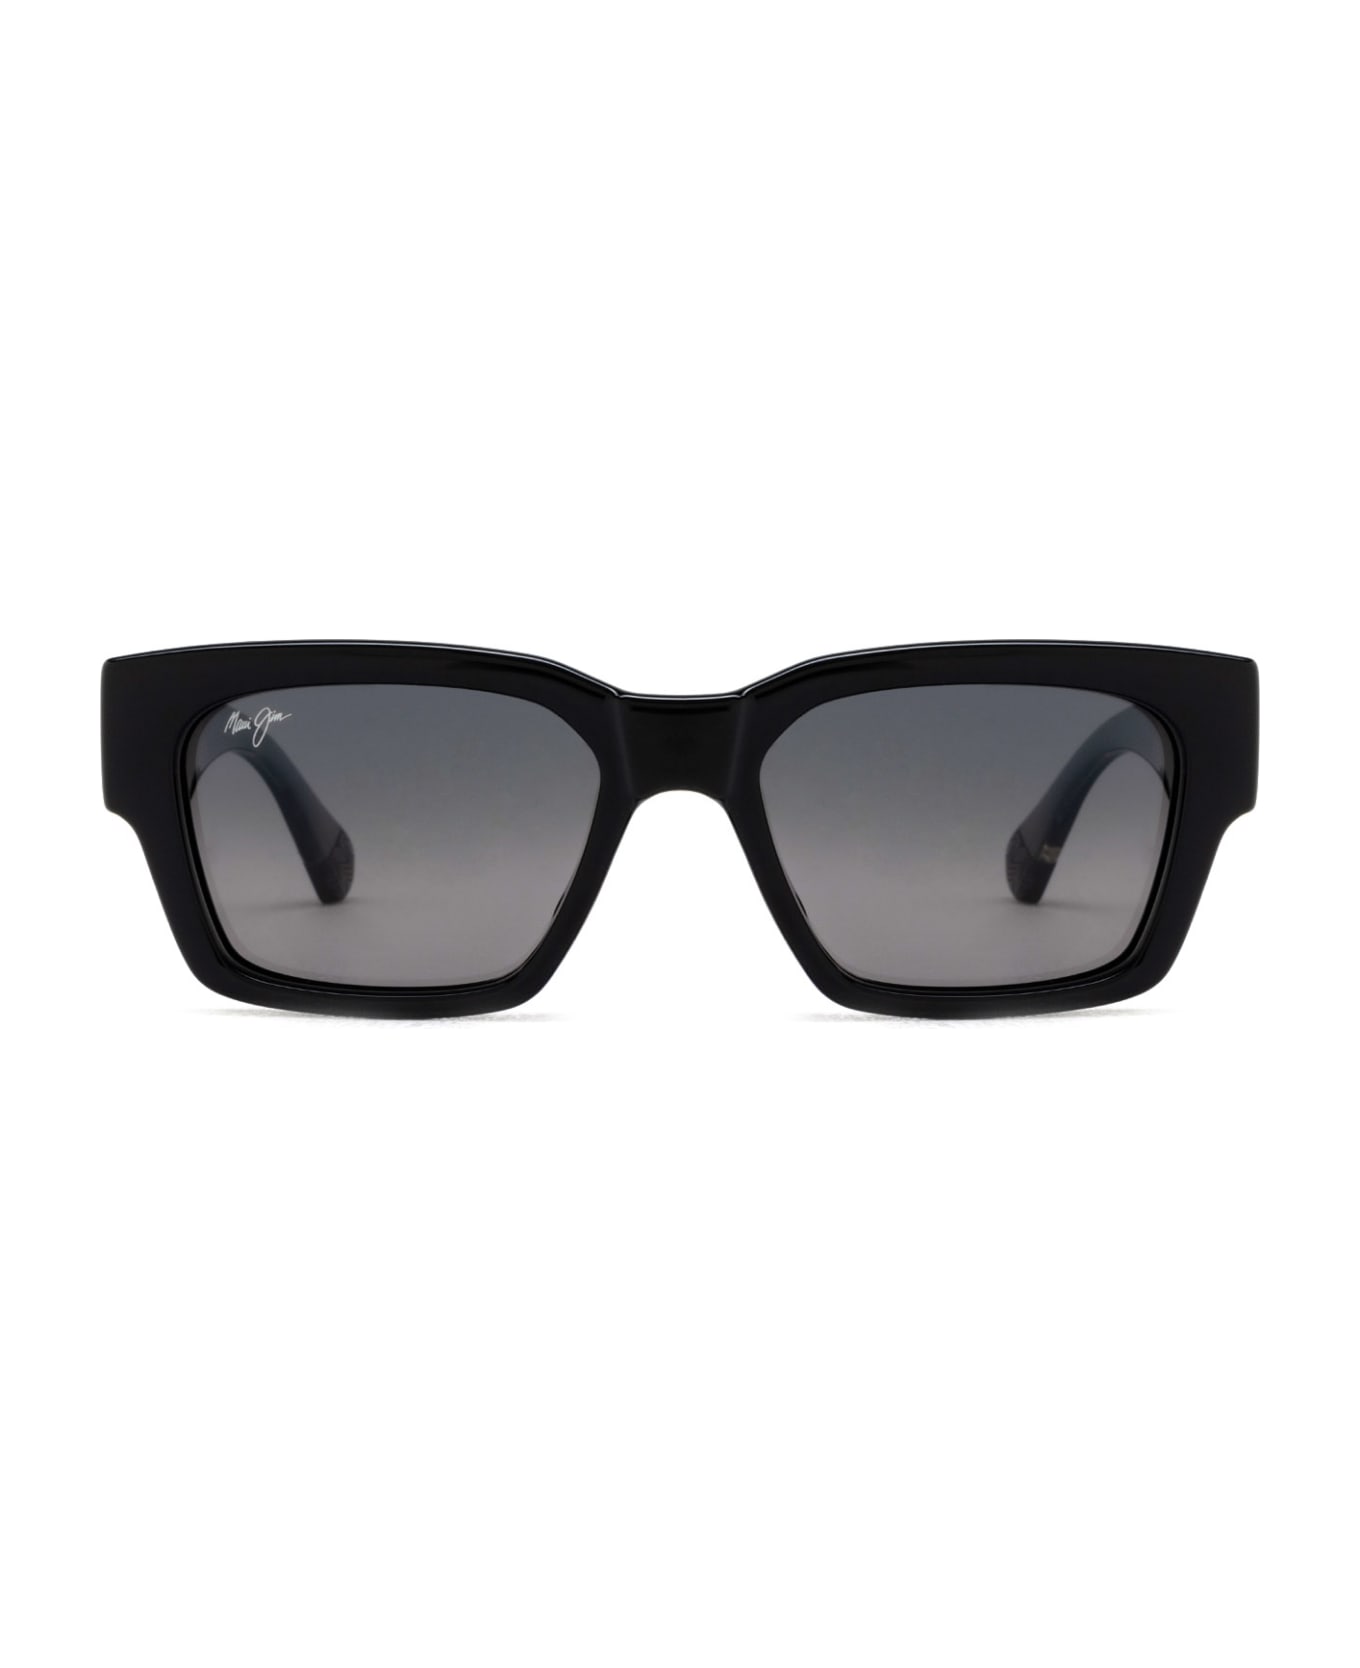 Maui Jim Mj642 Shiny Black W/trans Light Grey Sunglasses - Shiny Black W/Trans Light Grey サングラス